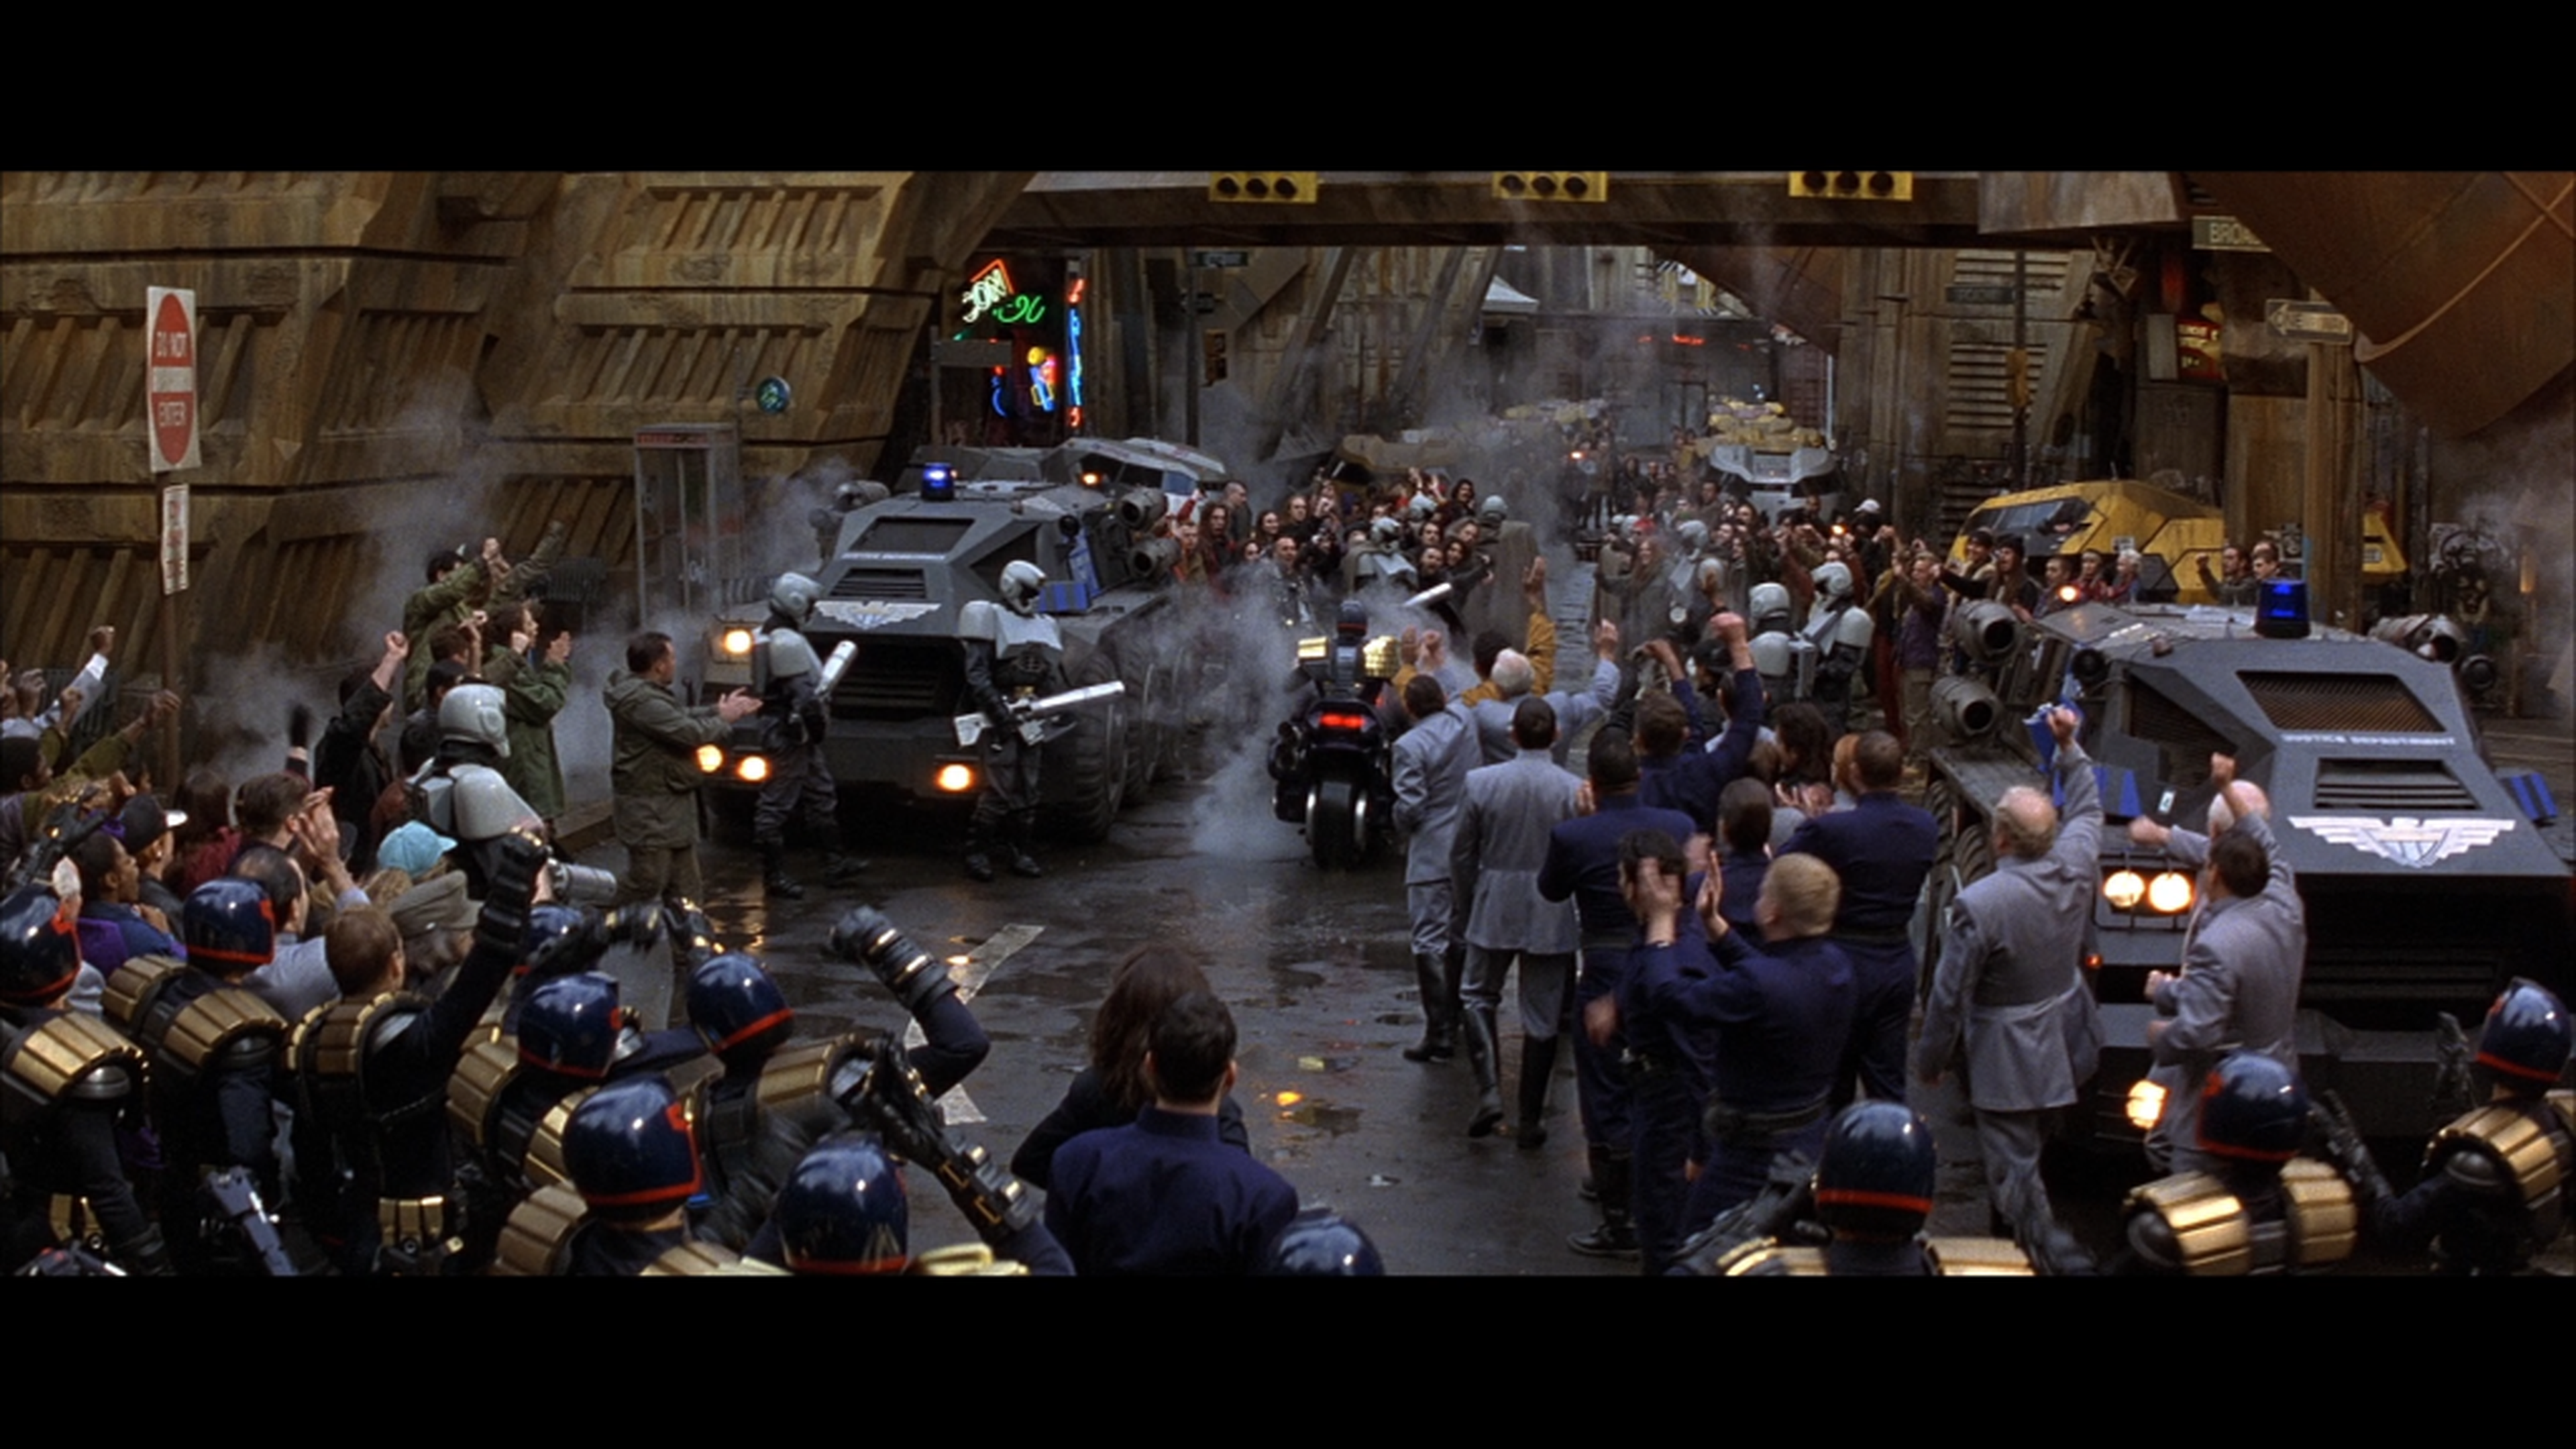 Juez Dredd (1995) - Crítica de la película de Stallone